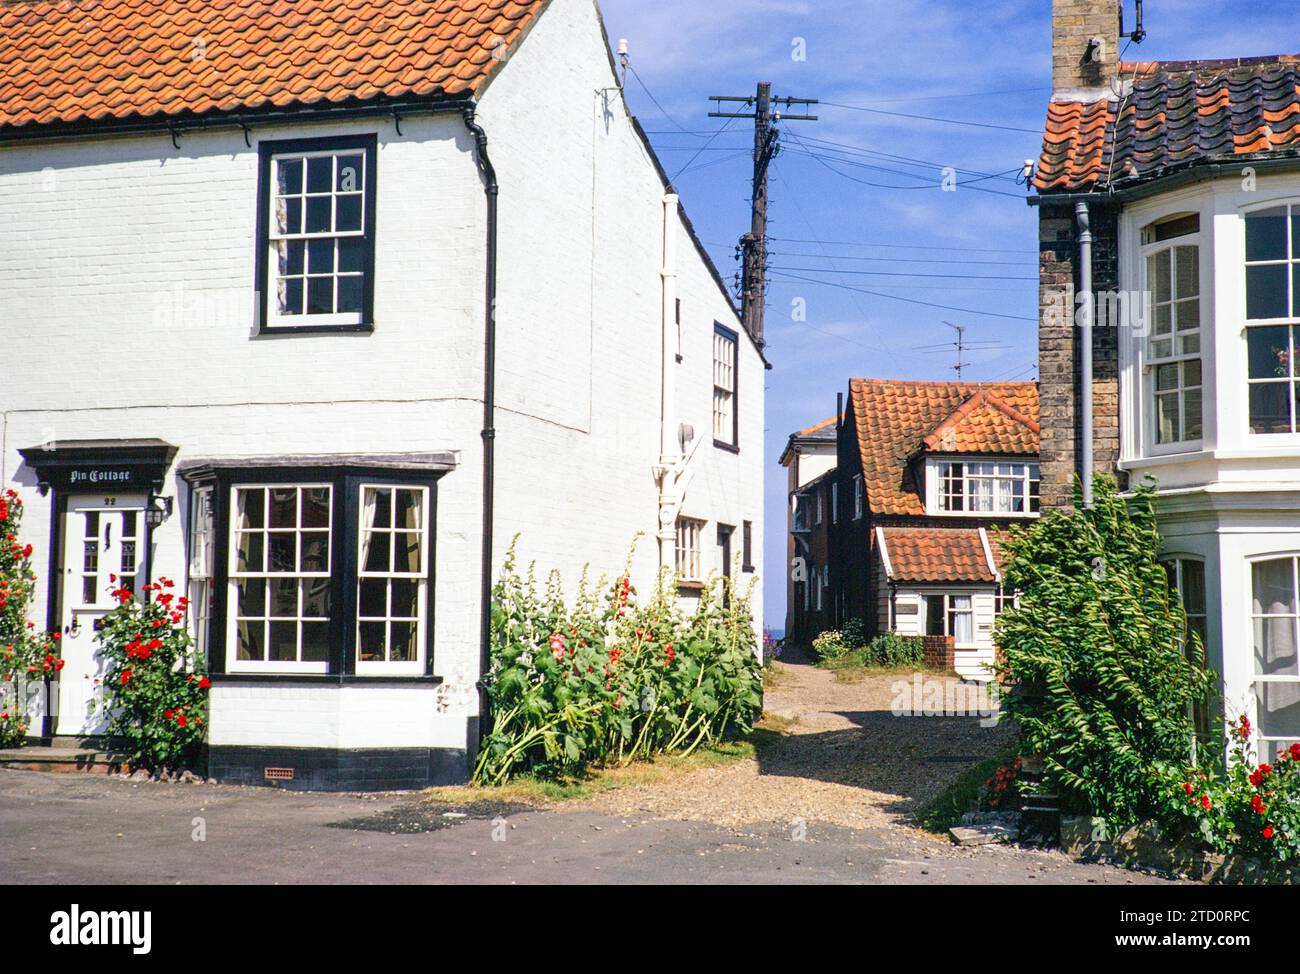 Graziosi cottage storici sul mare, Southwold, Suffolk, Inghilterra, Regno Unito, luglio 1971 Foto Stock